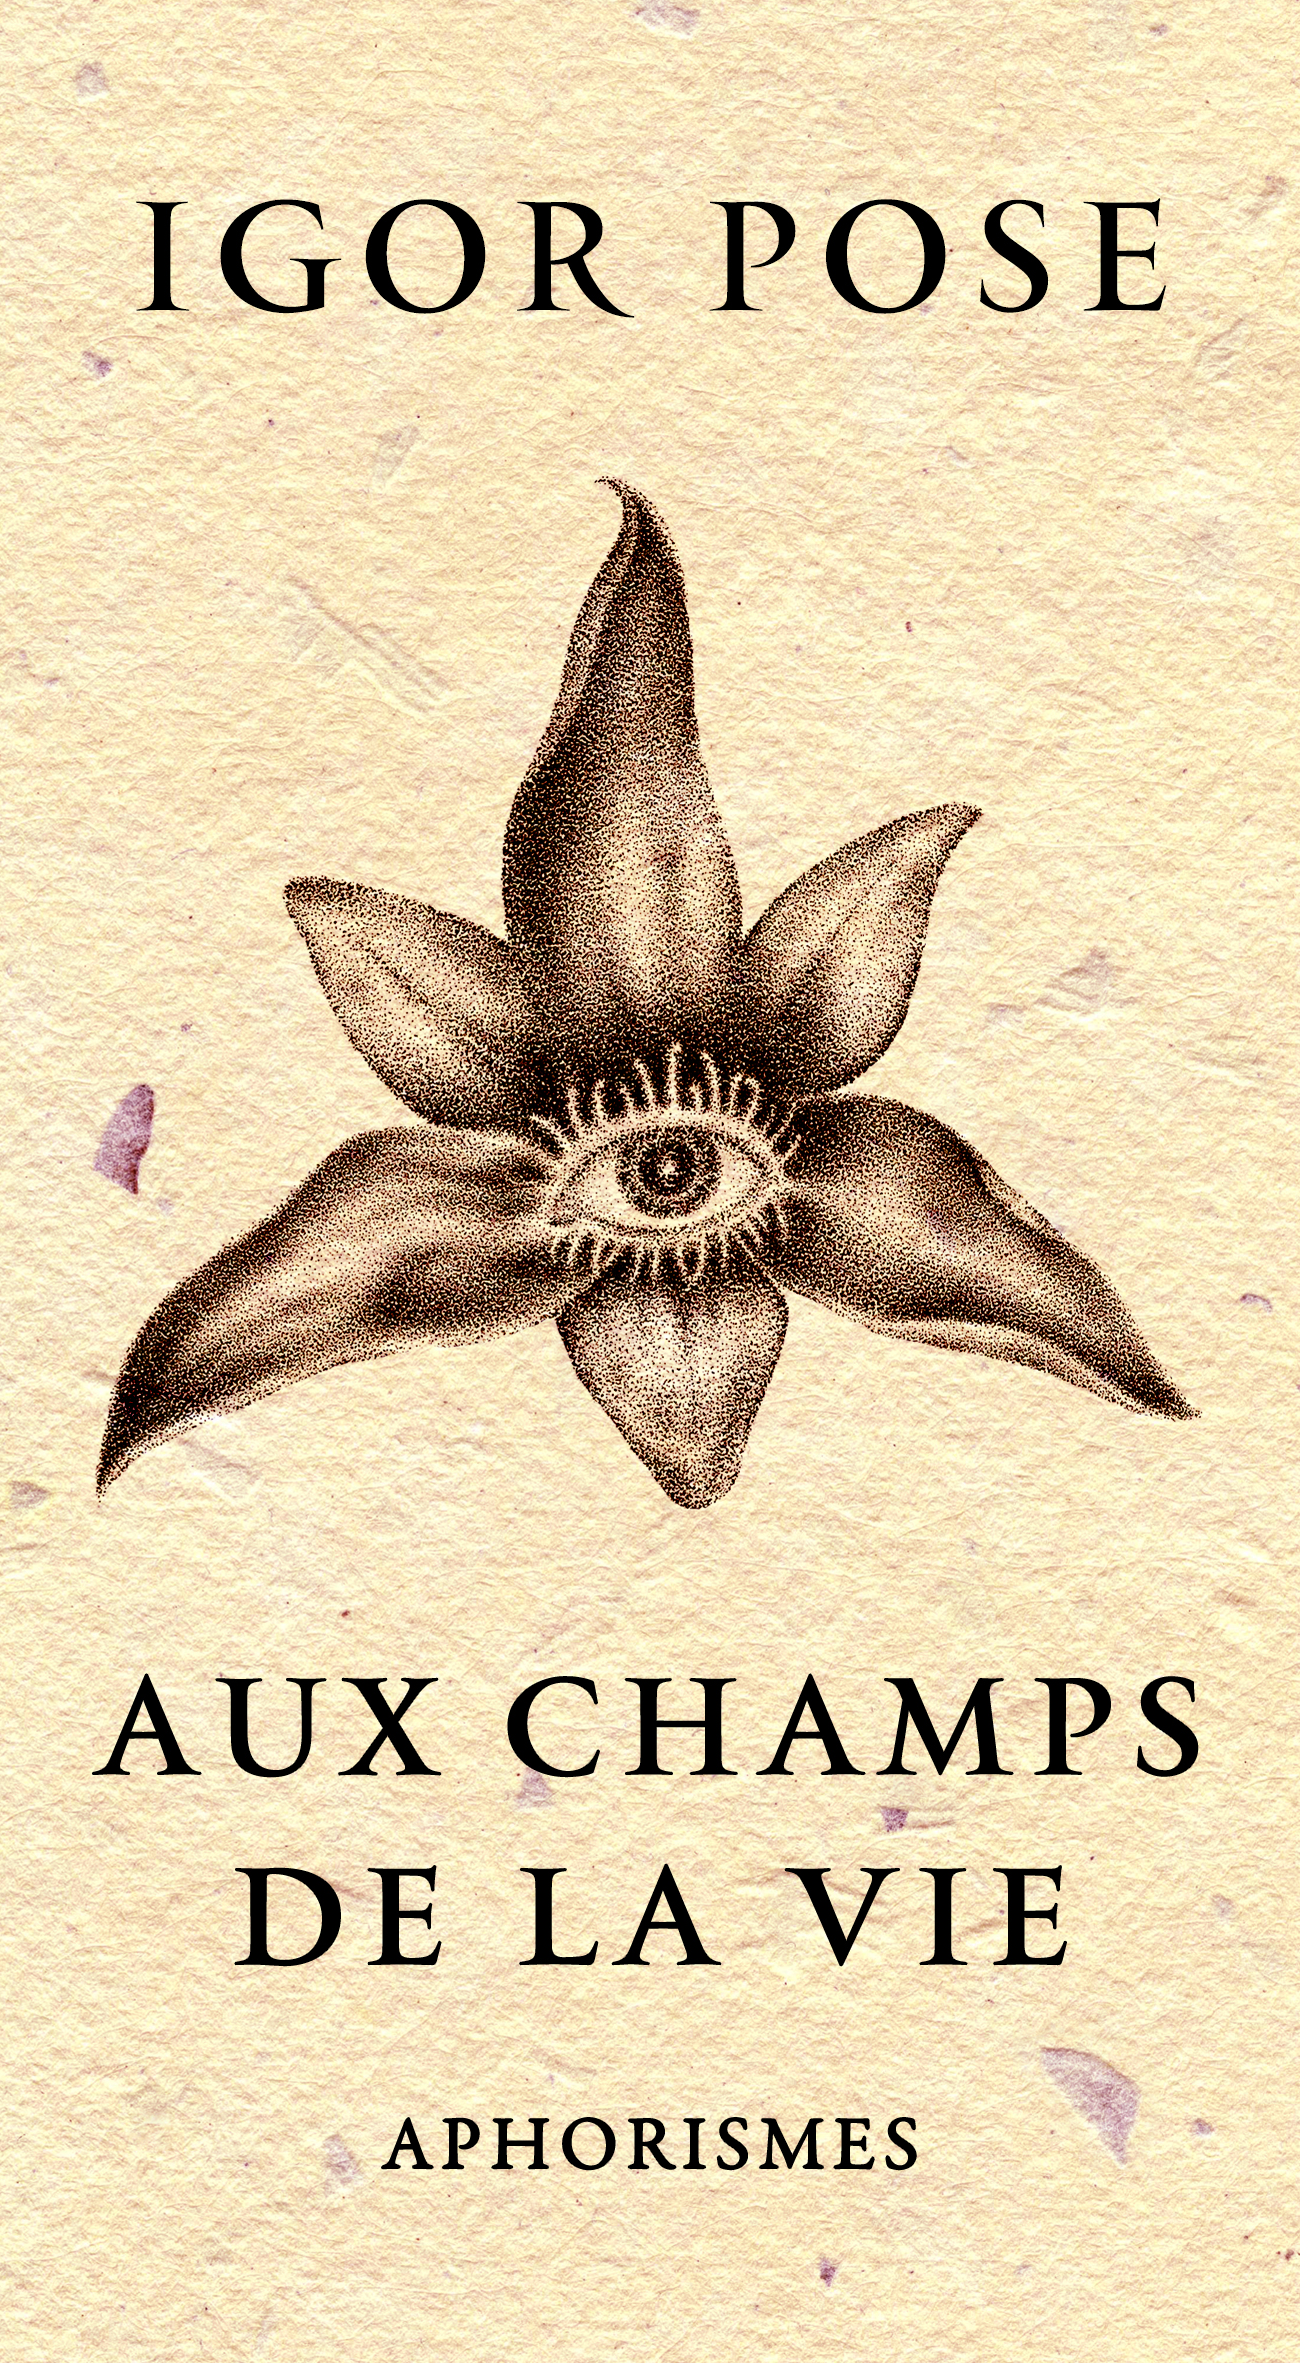 AUX CHAMPS DE LA VIE